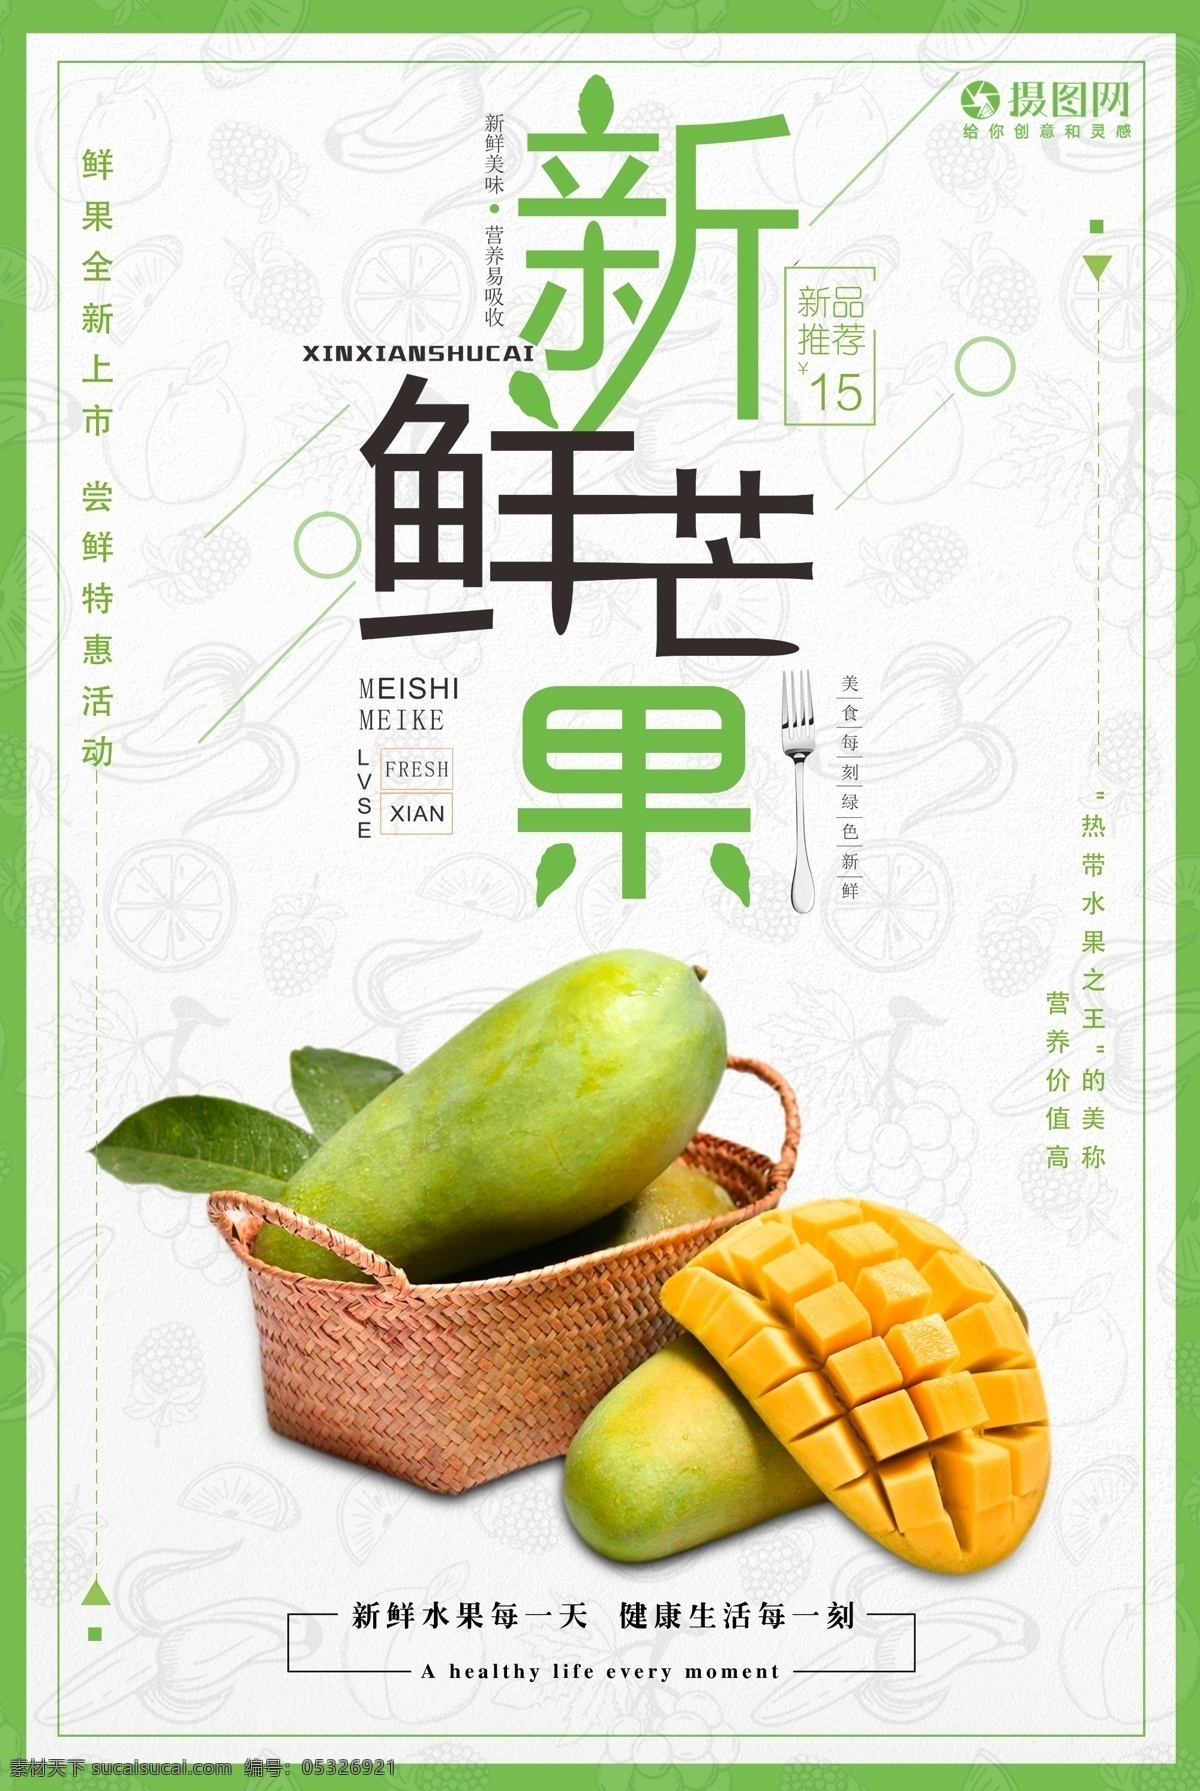 新鲜 芒果 水果 海报 新鲜芒果 芒果海报 新鲜水果 水果海报 食物 促销海报 水果促销